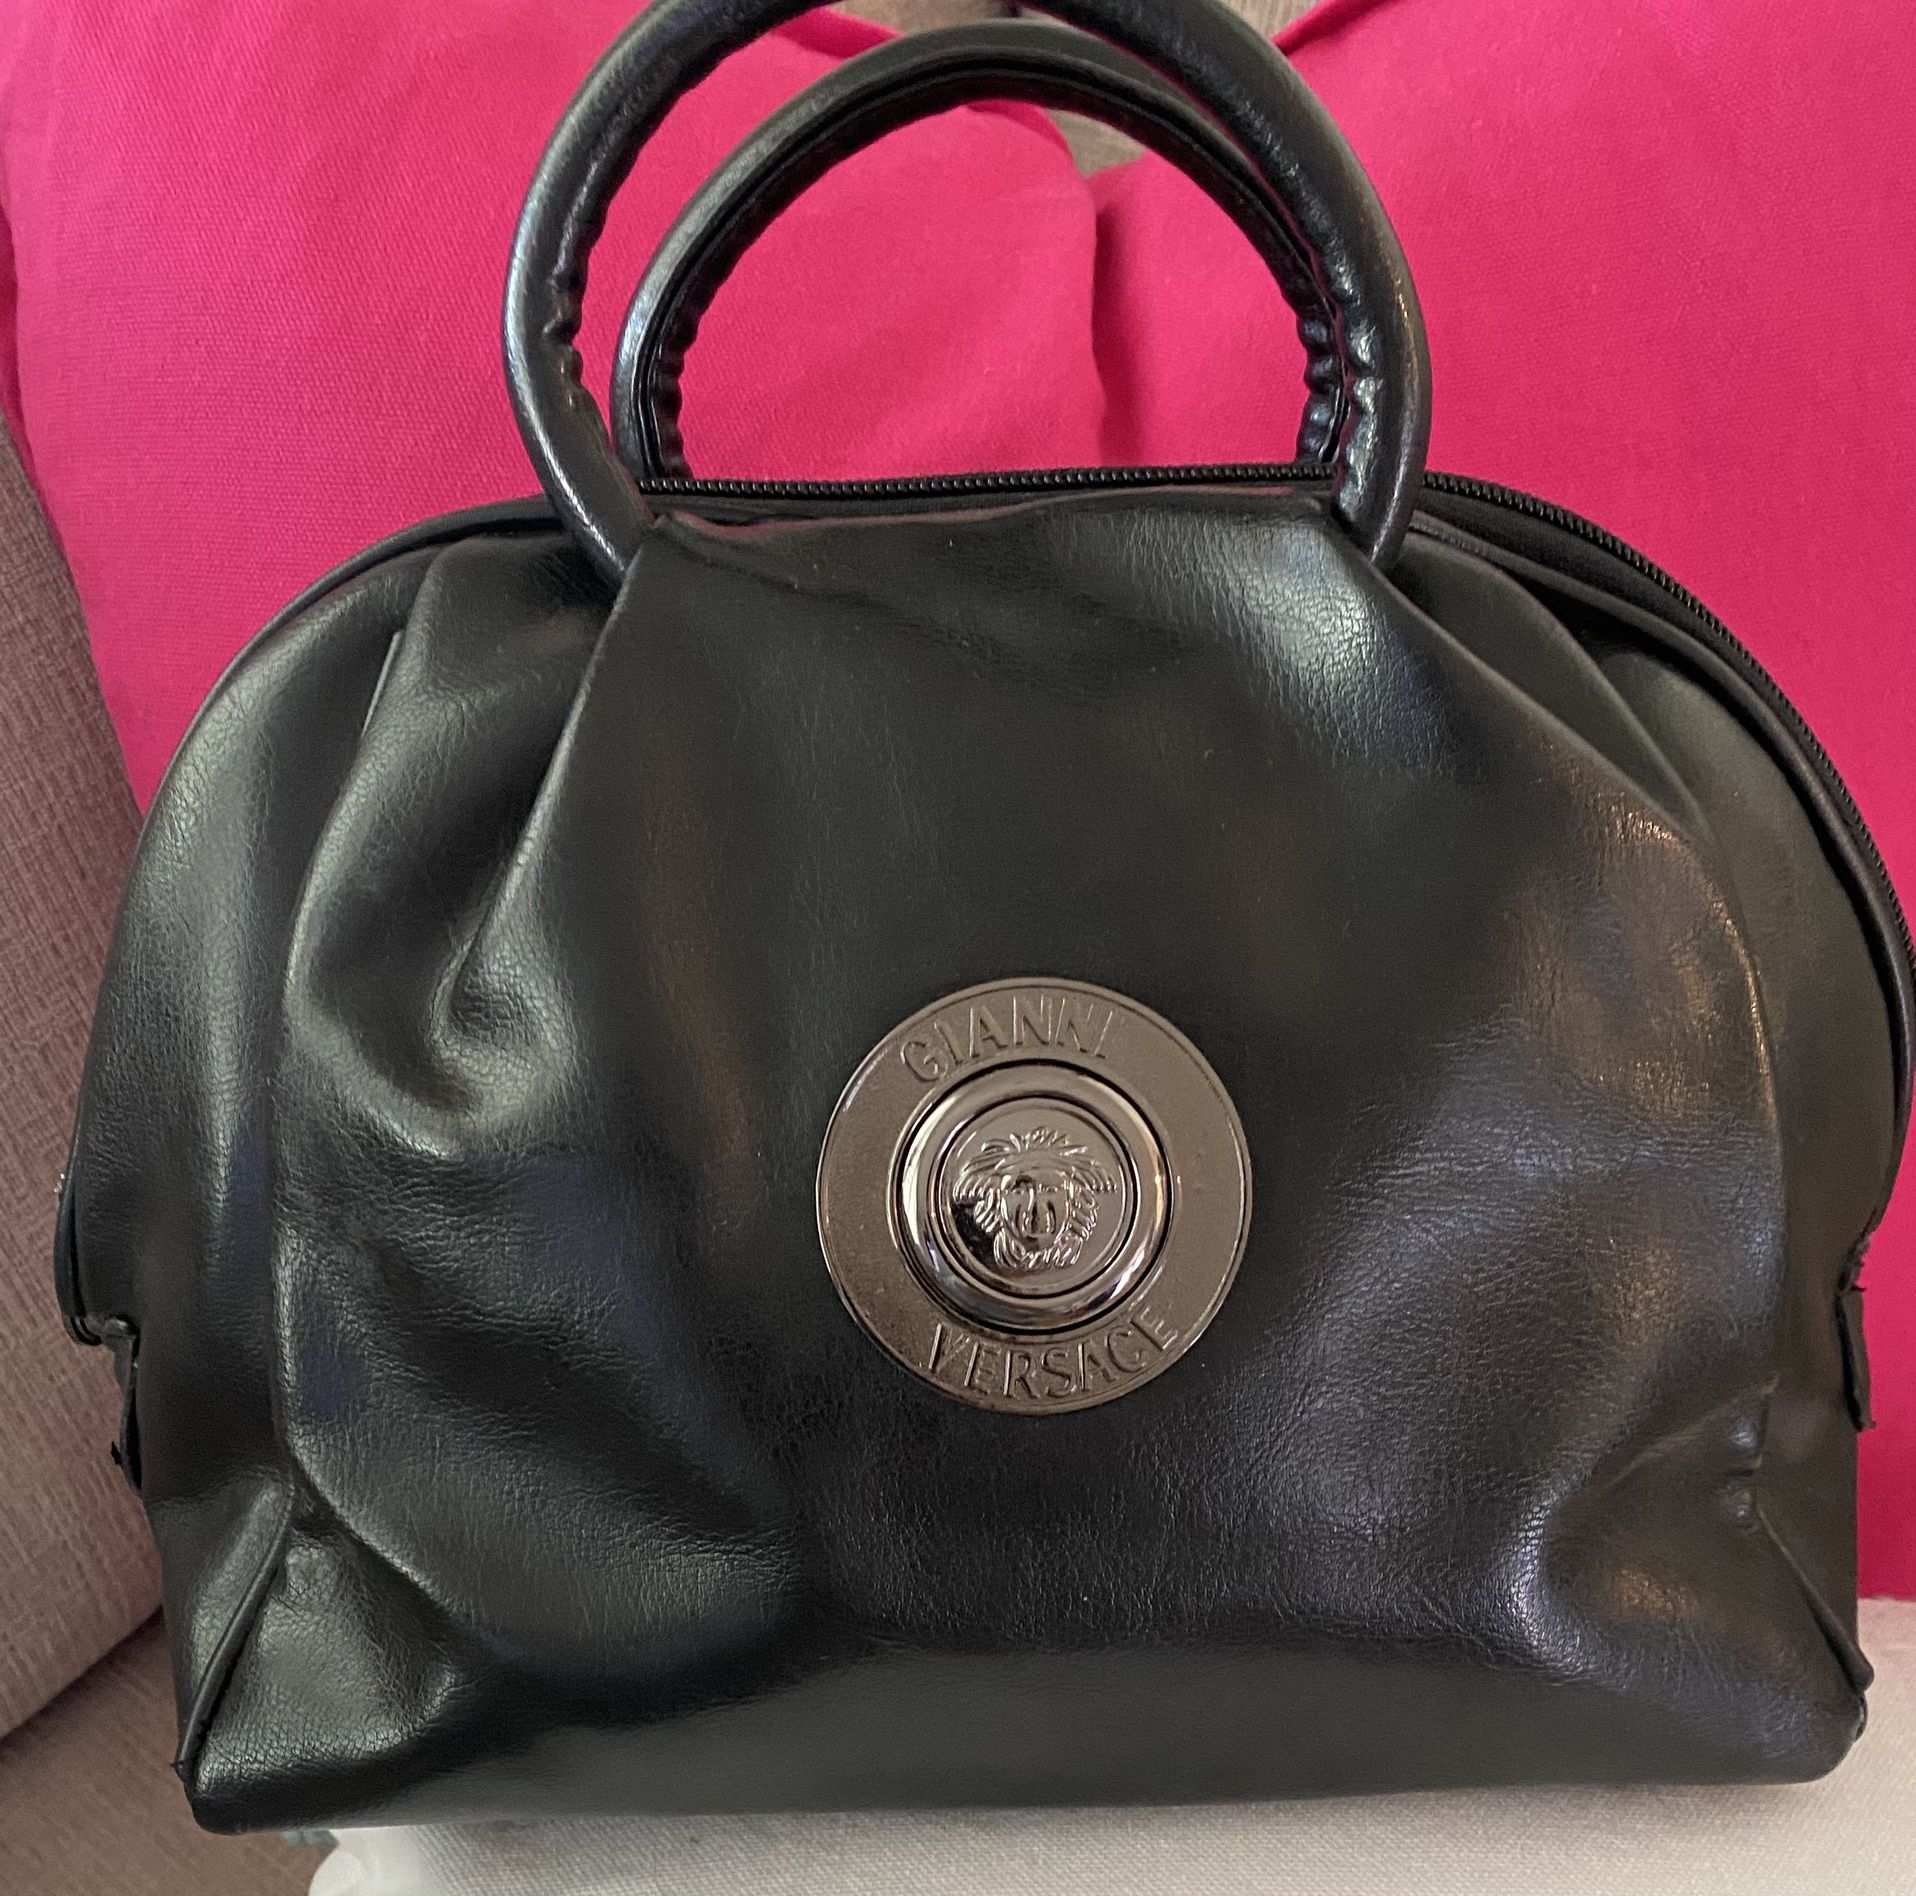 Versace / versace bag / Versace handbag / Purse  / Designer Handbag